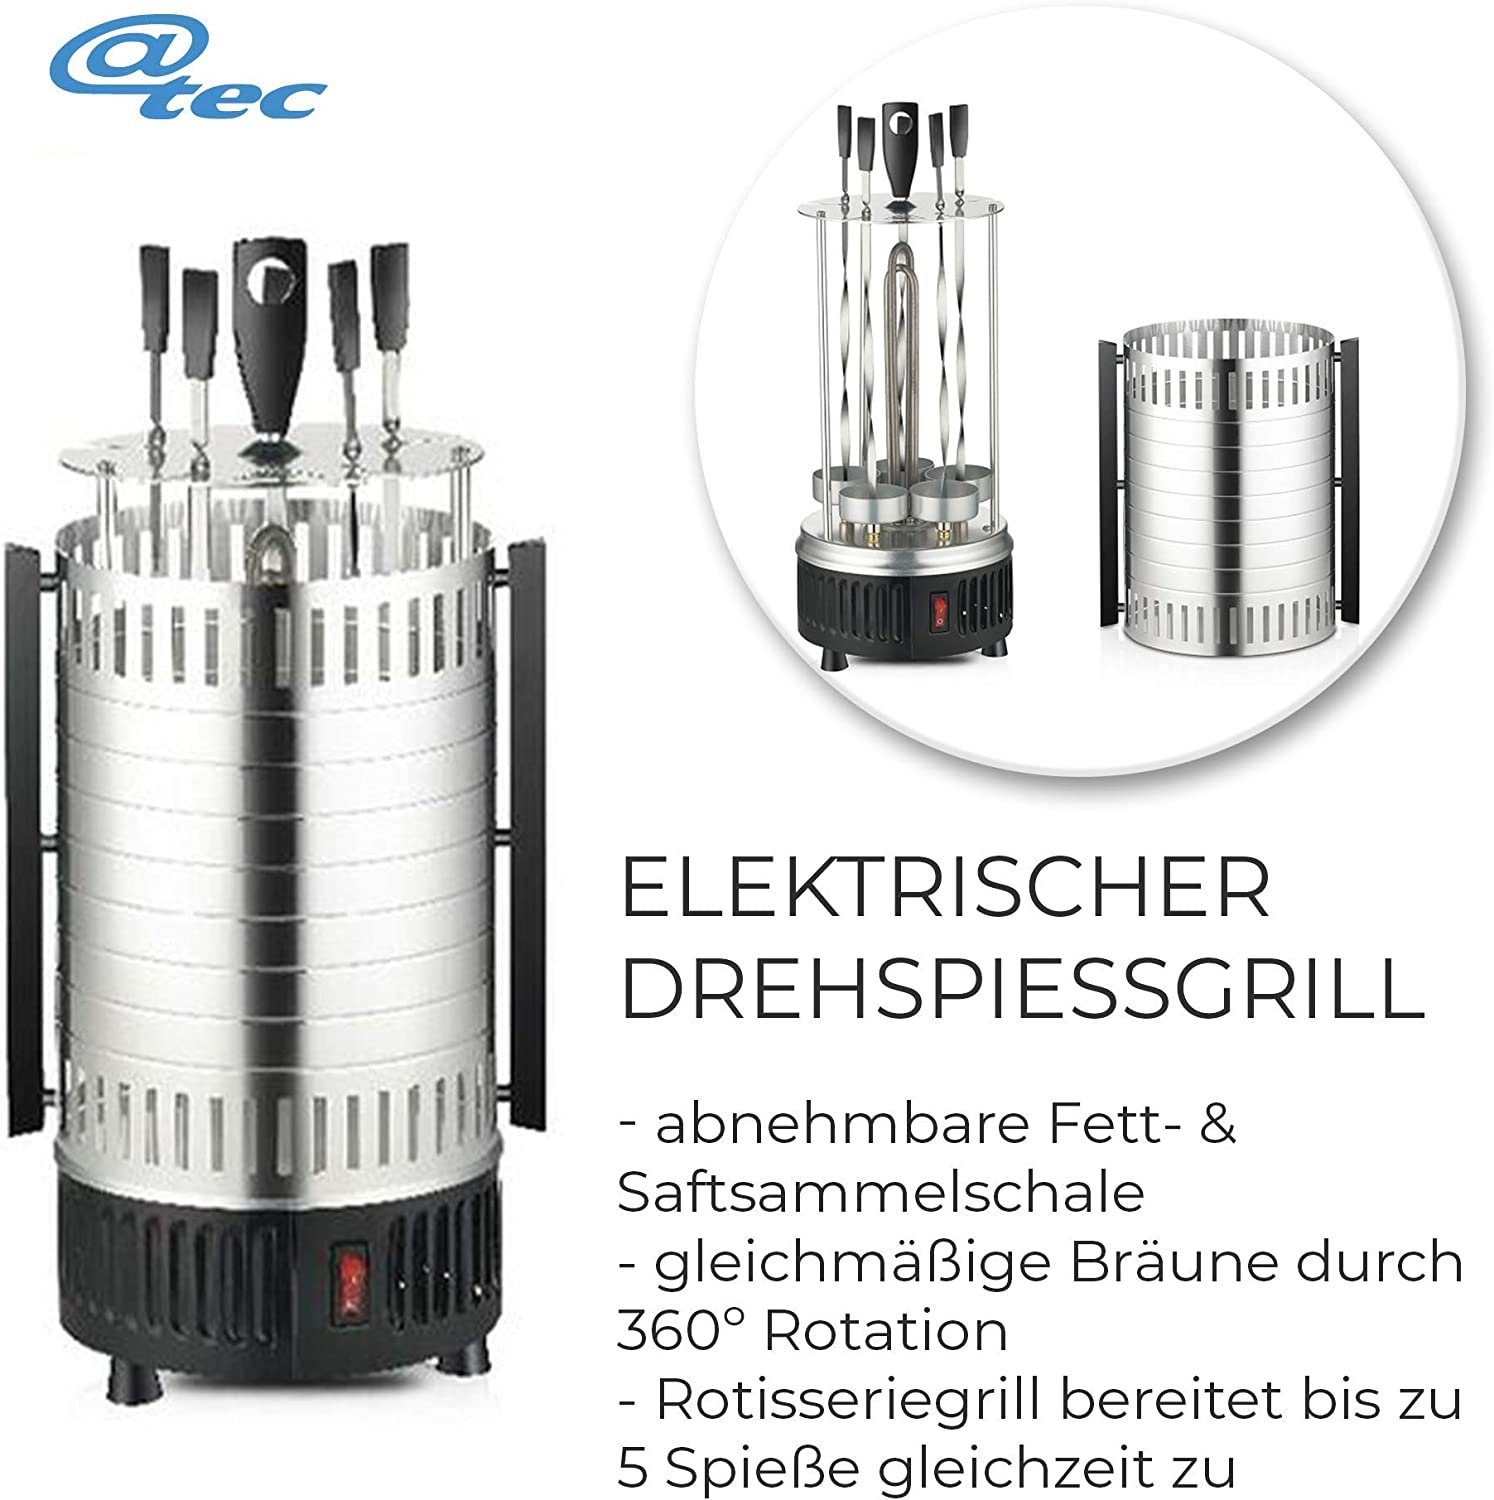 Grill Garnelen-Spieße Vertikalgrill BBQ Edelstahl Elektro Rund Tischgrill @tec BBQ Fleisch-, Tisch 900W, für